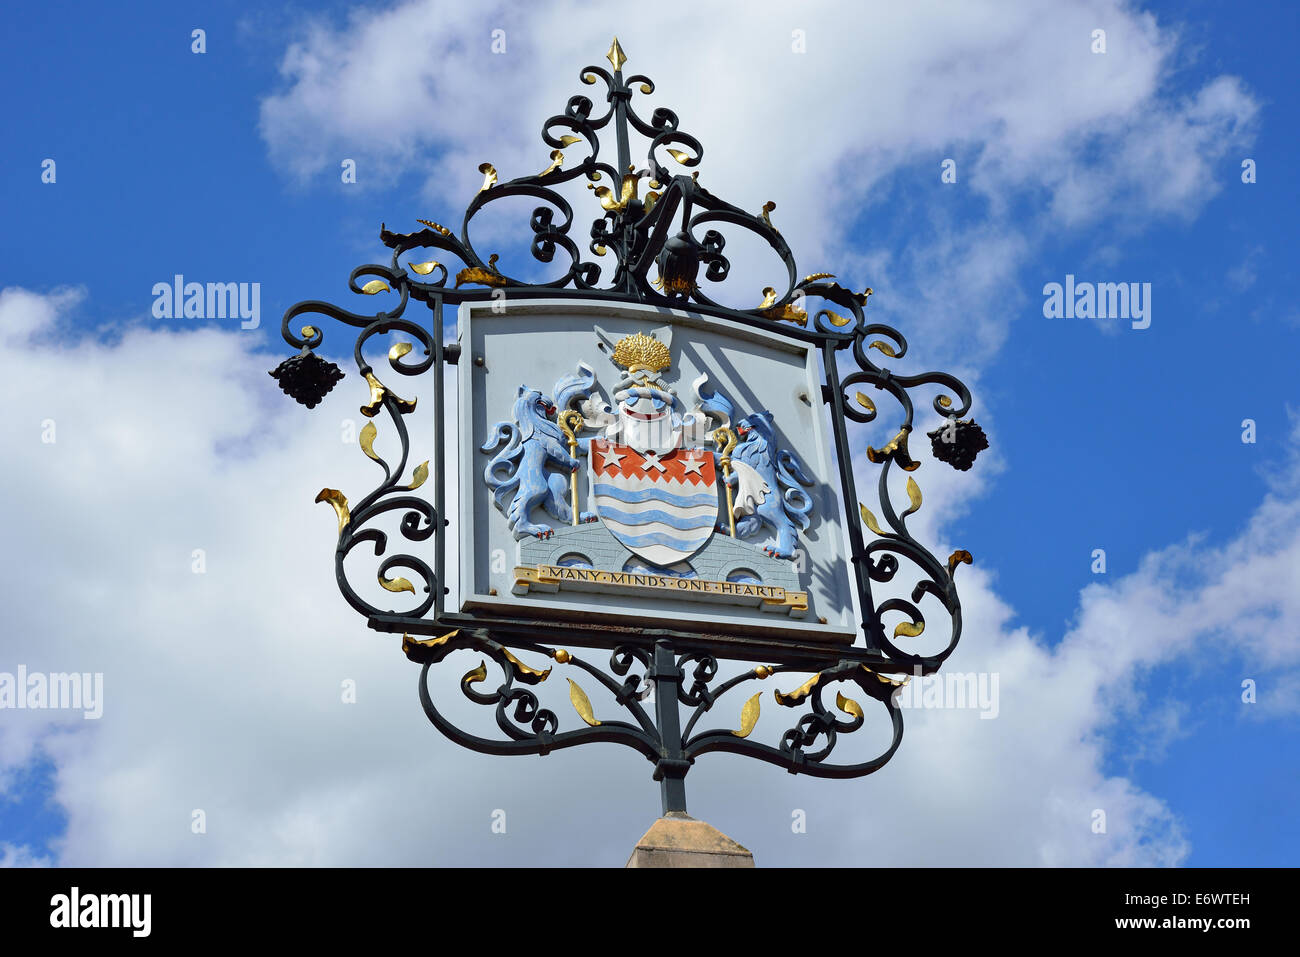 Stemma della città segno, High Street, Chelmsford Essex, Inghilterra, Regno Unito Foto Stock